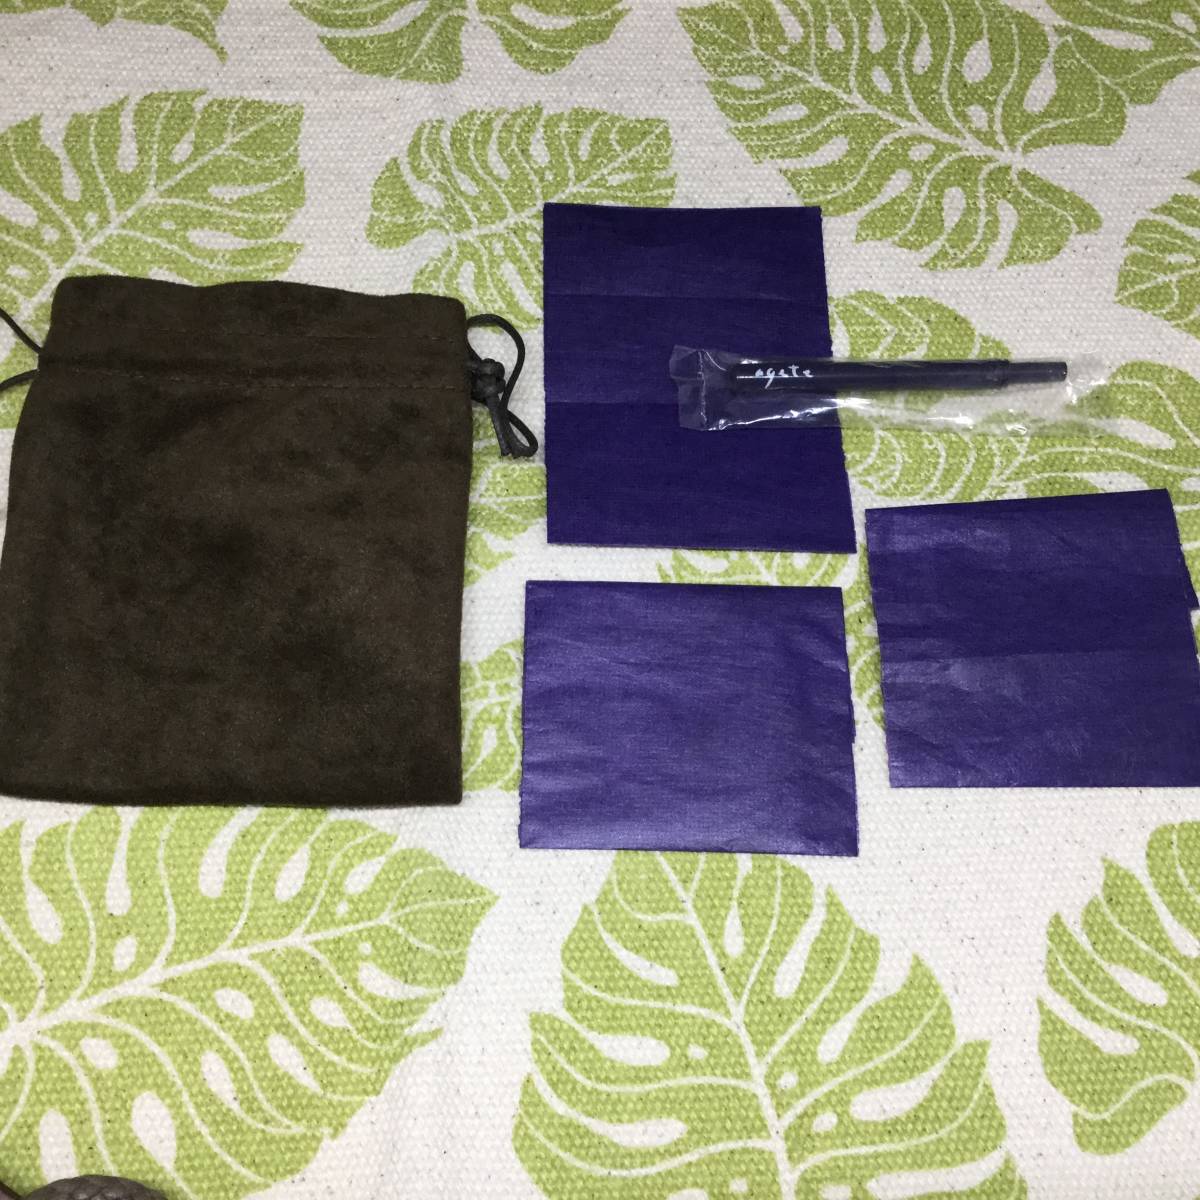 [p] agete Agete box коробка пустой коробка ювелирные изделия кейс сумка бумажный пакет фиолетовый защита пакет браслет assist 